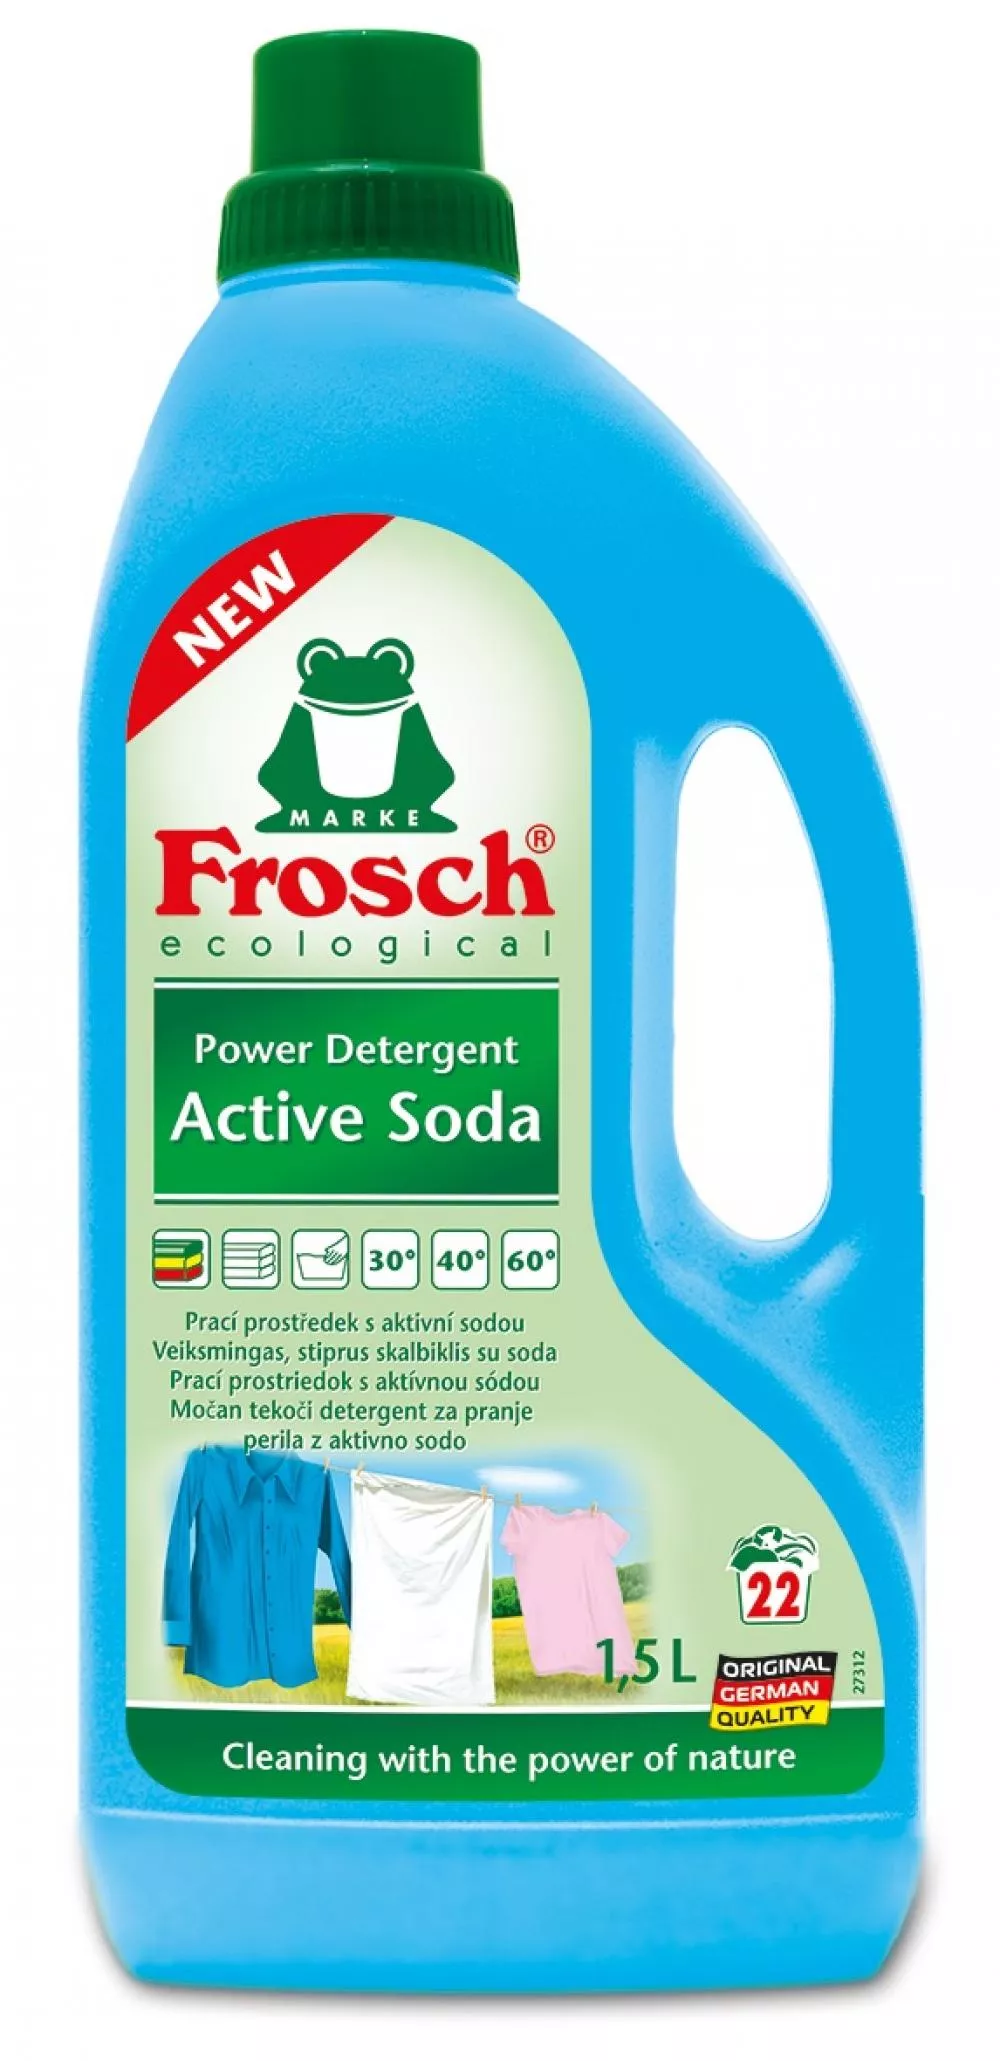 Frosch Waschmittel mit Aktivsoda (ECO, 1500ml)